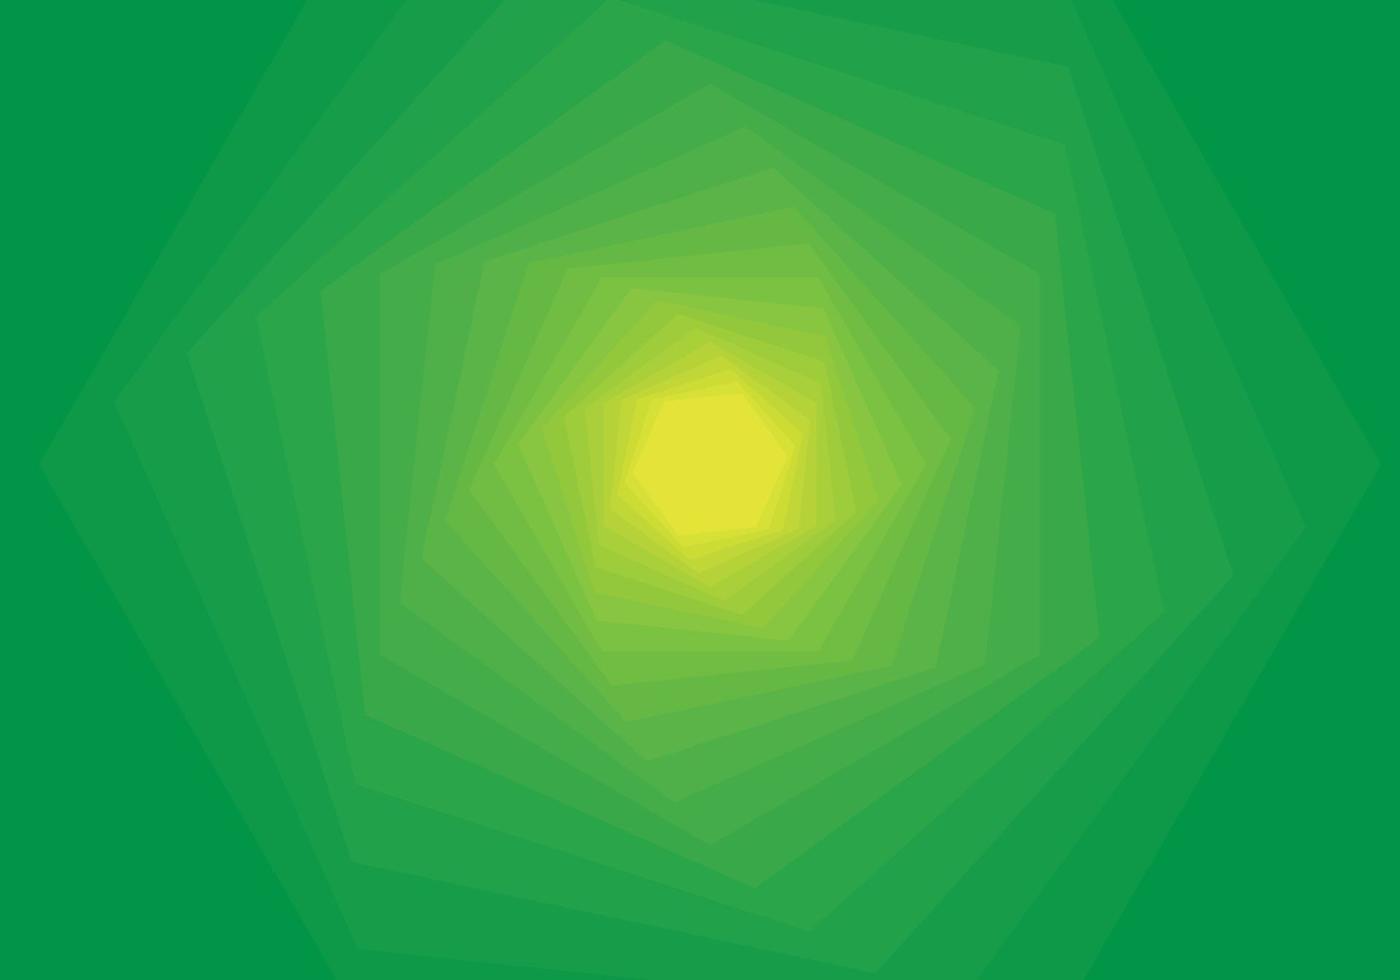 fundo abstrato composto por hexágonos giratórios em gradiente de estilo tecnológico de verde claro a escuro vetor